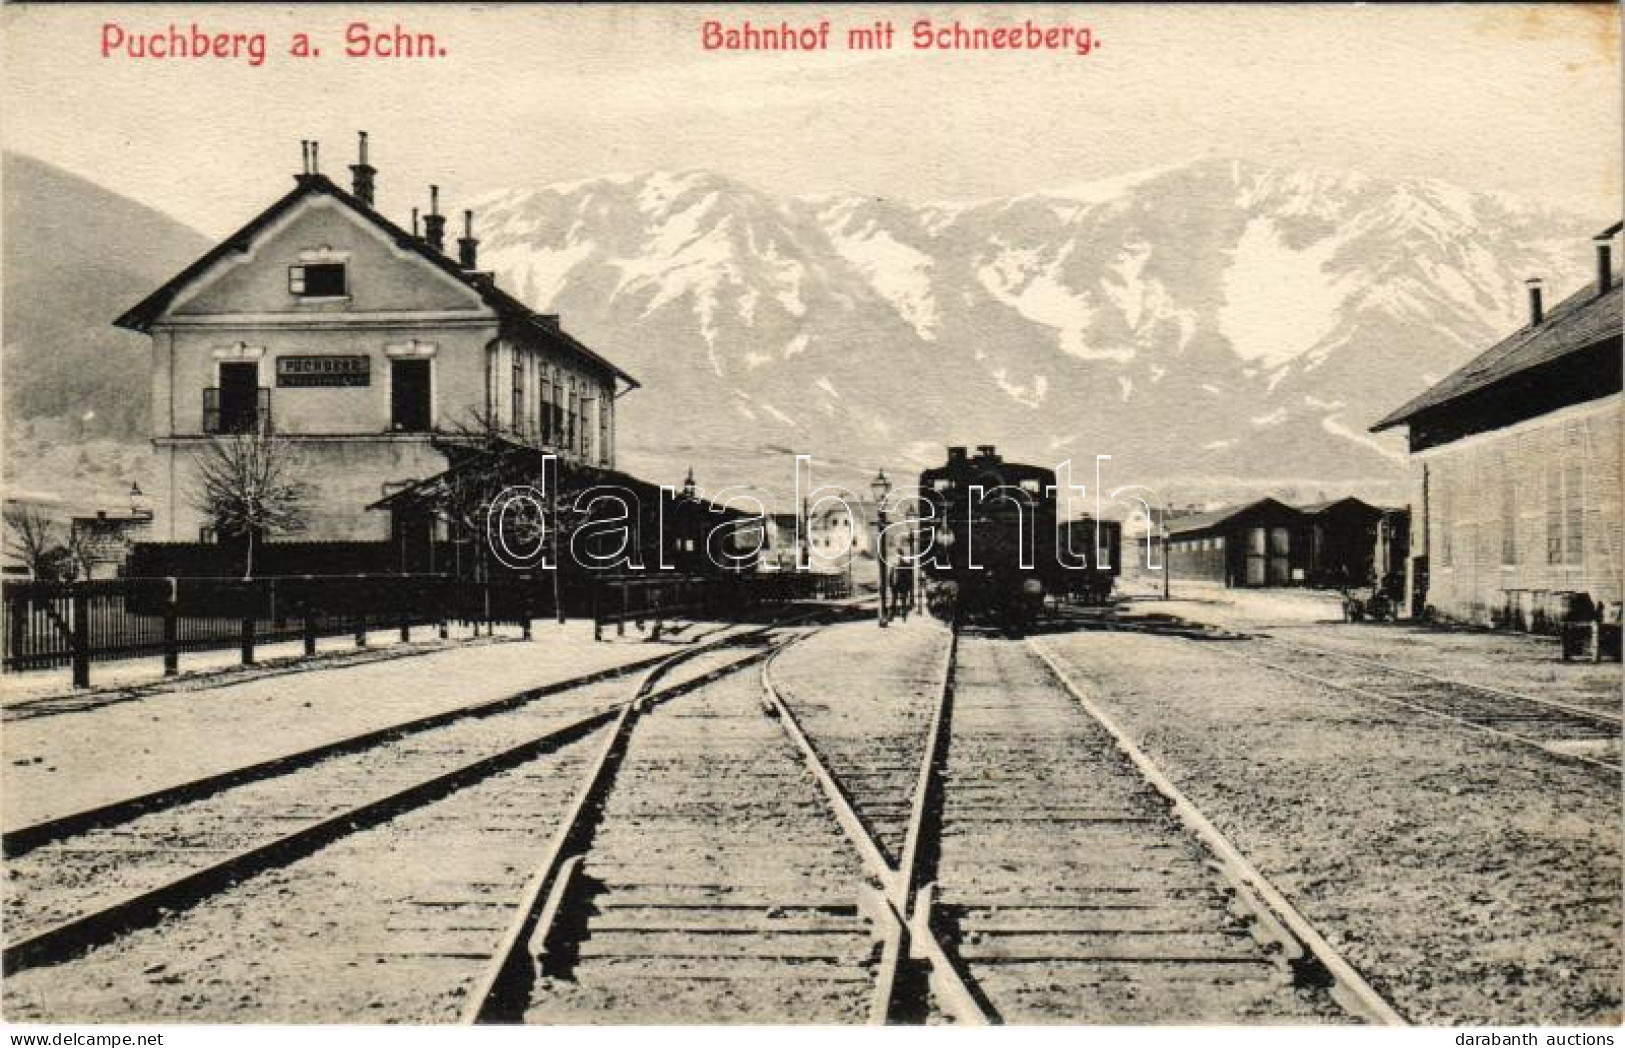 T2/T3 1907 Puchberg Am Schneeberg, Bahnhof Mit Schneeberg / Railway Station, Train - Unclassified